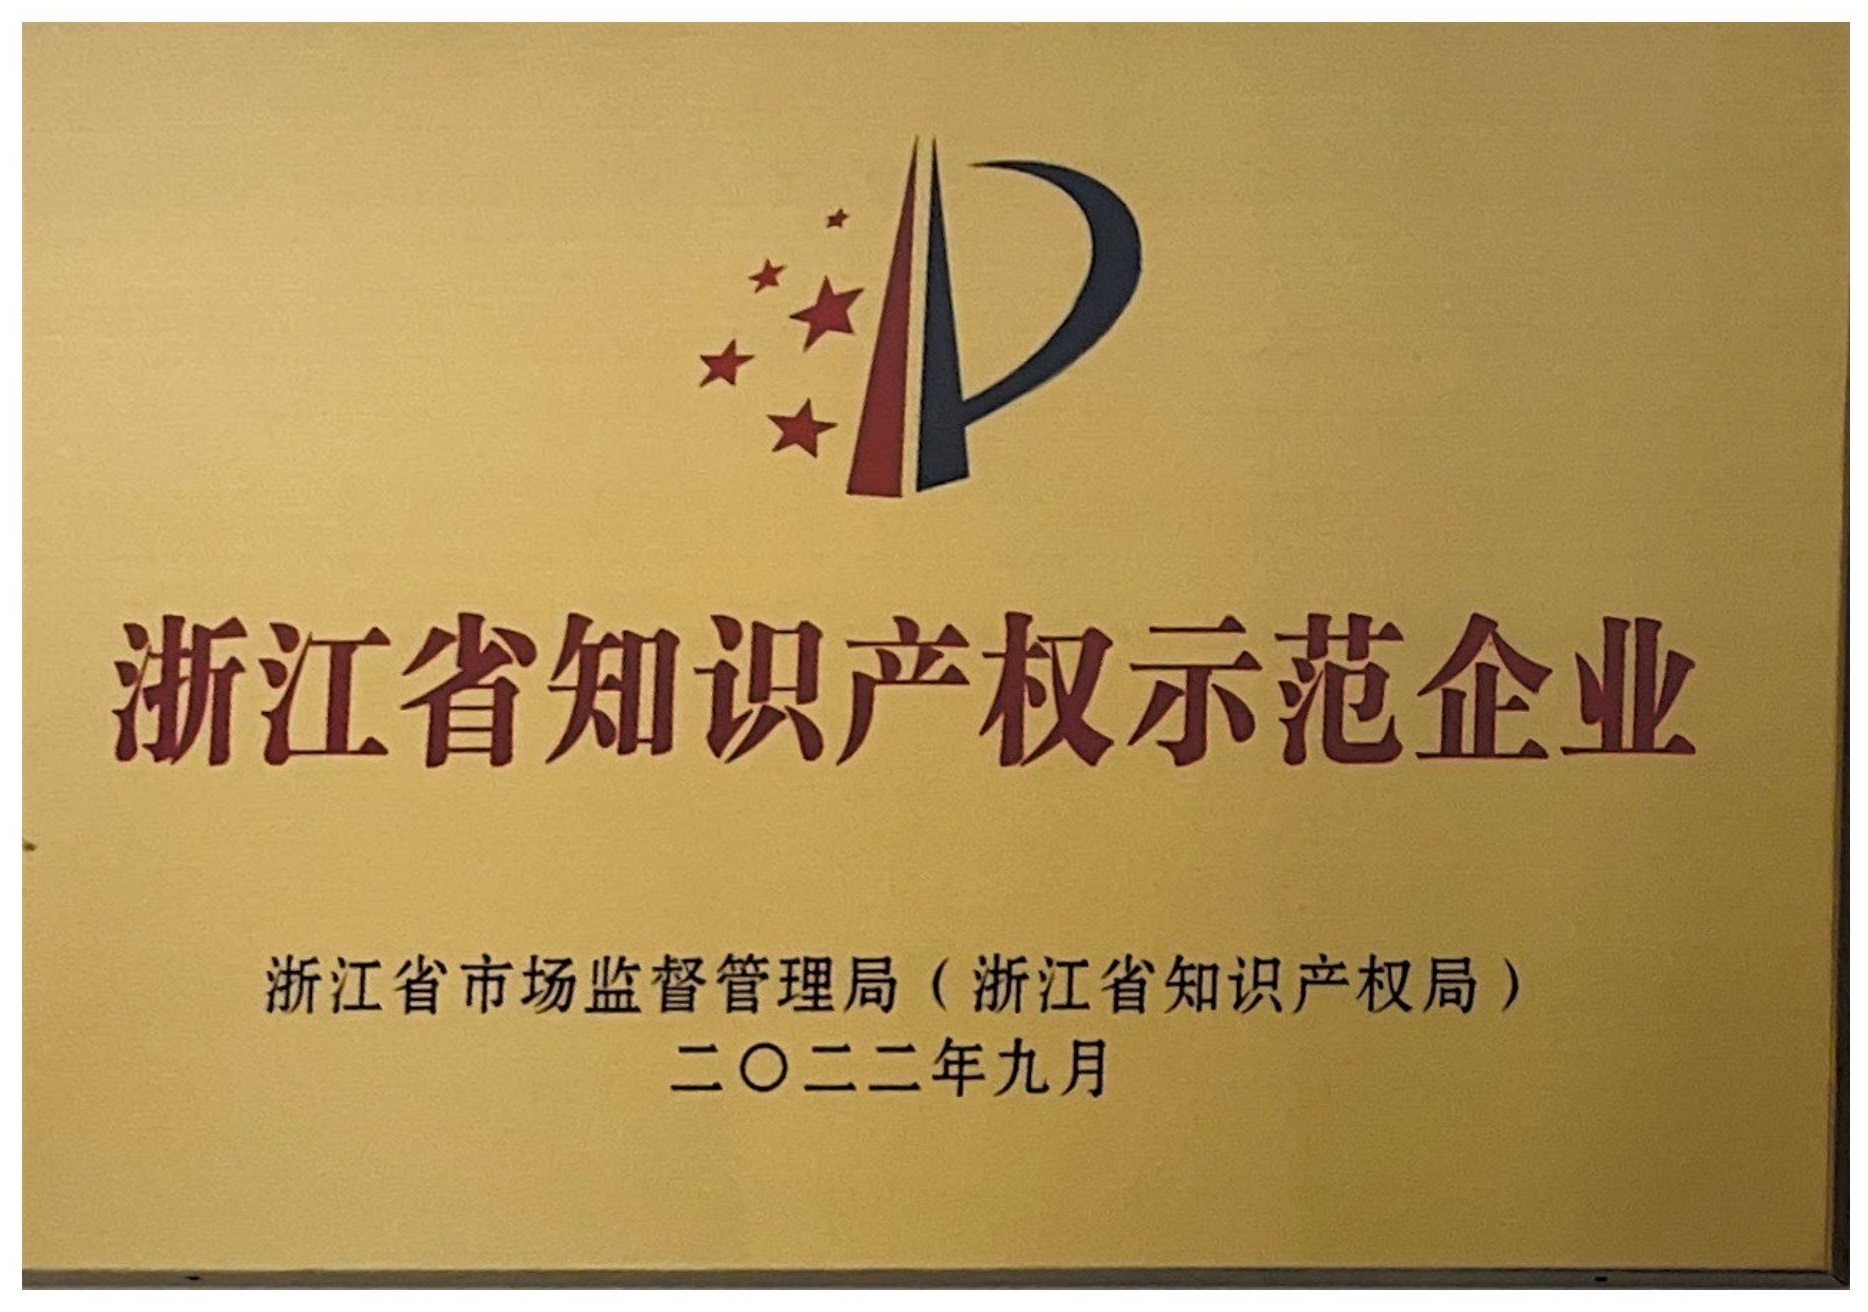 银轮获得浙江省知识产权示范企业称号